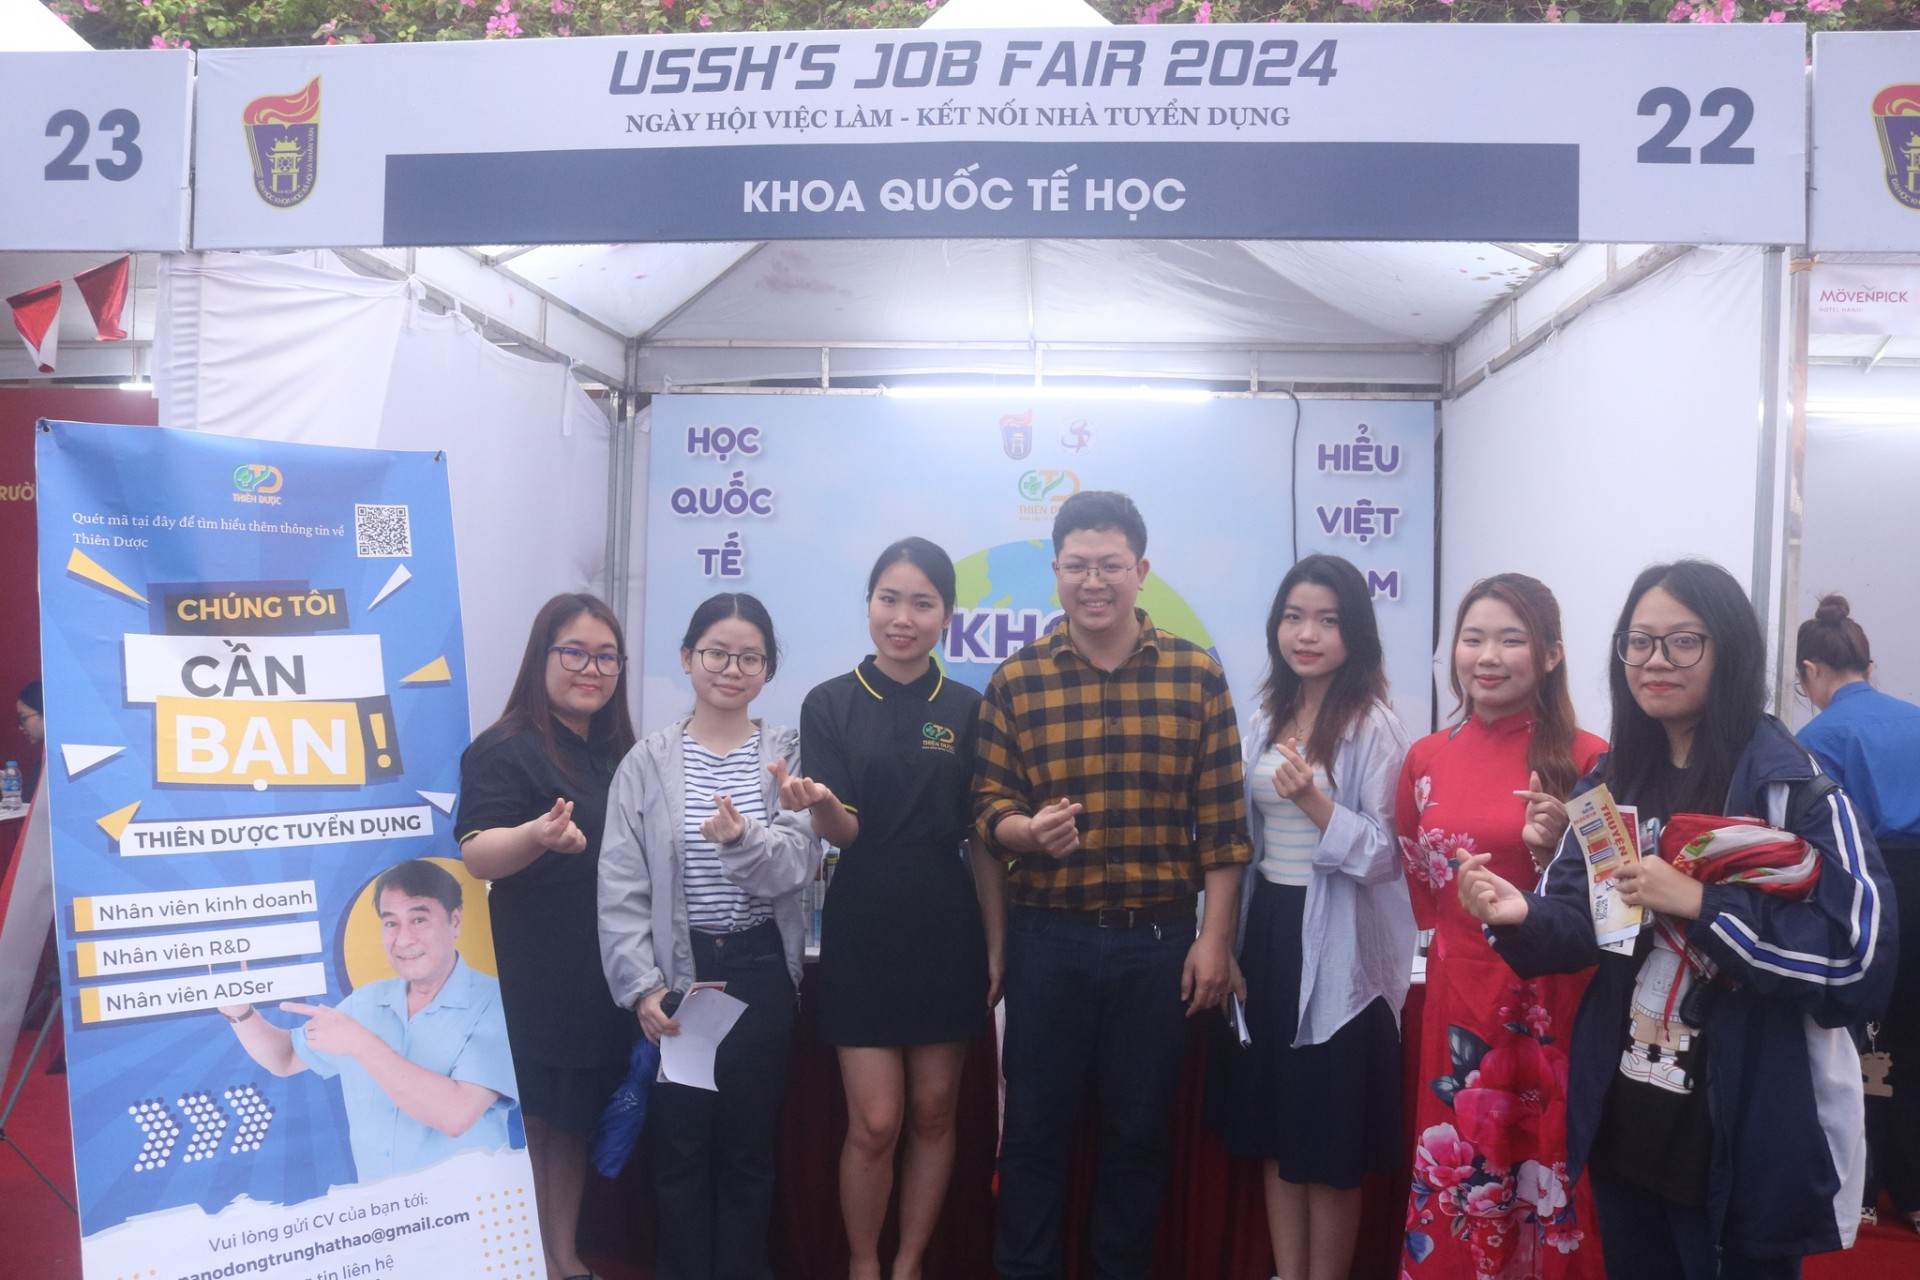 USSH Job fair 2024